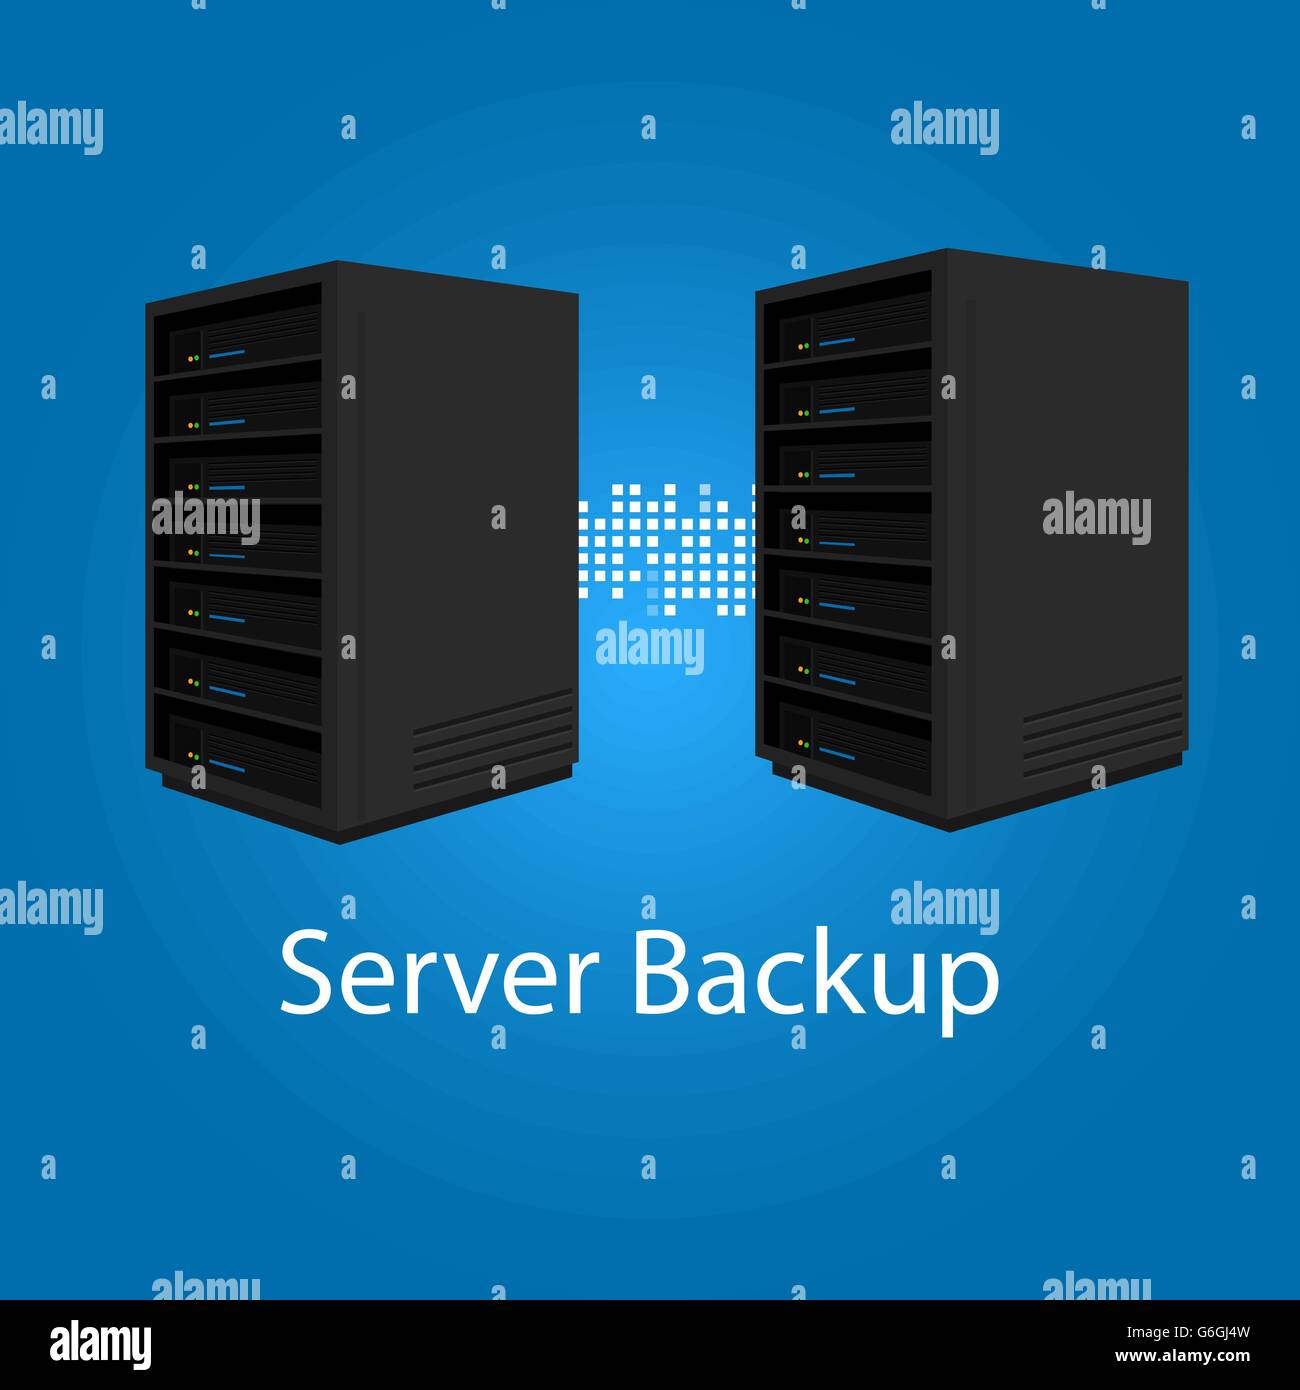 zwei Server backup-Redundanz Spiegel für Erholung und Leistung Stock Vektor